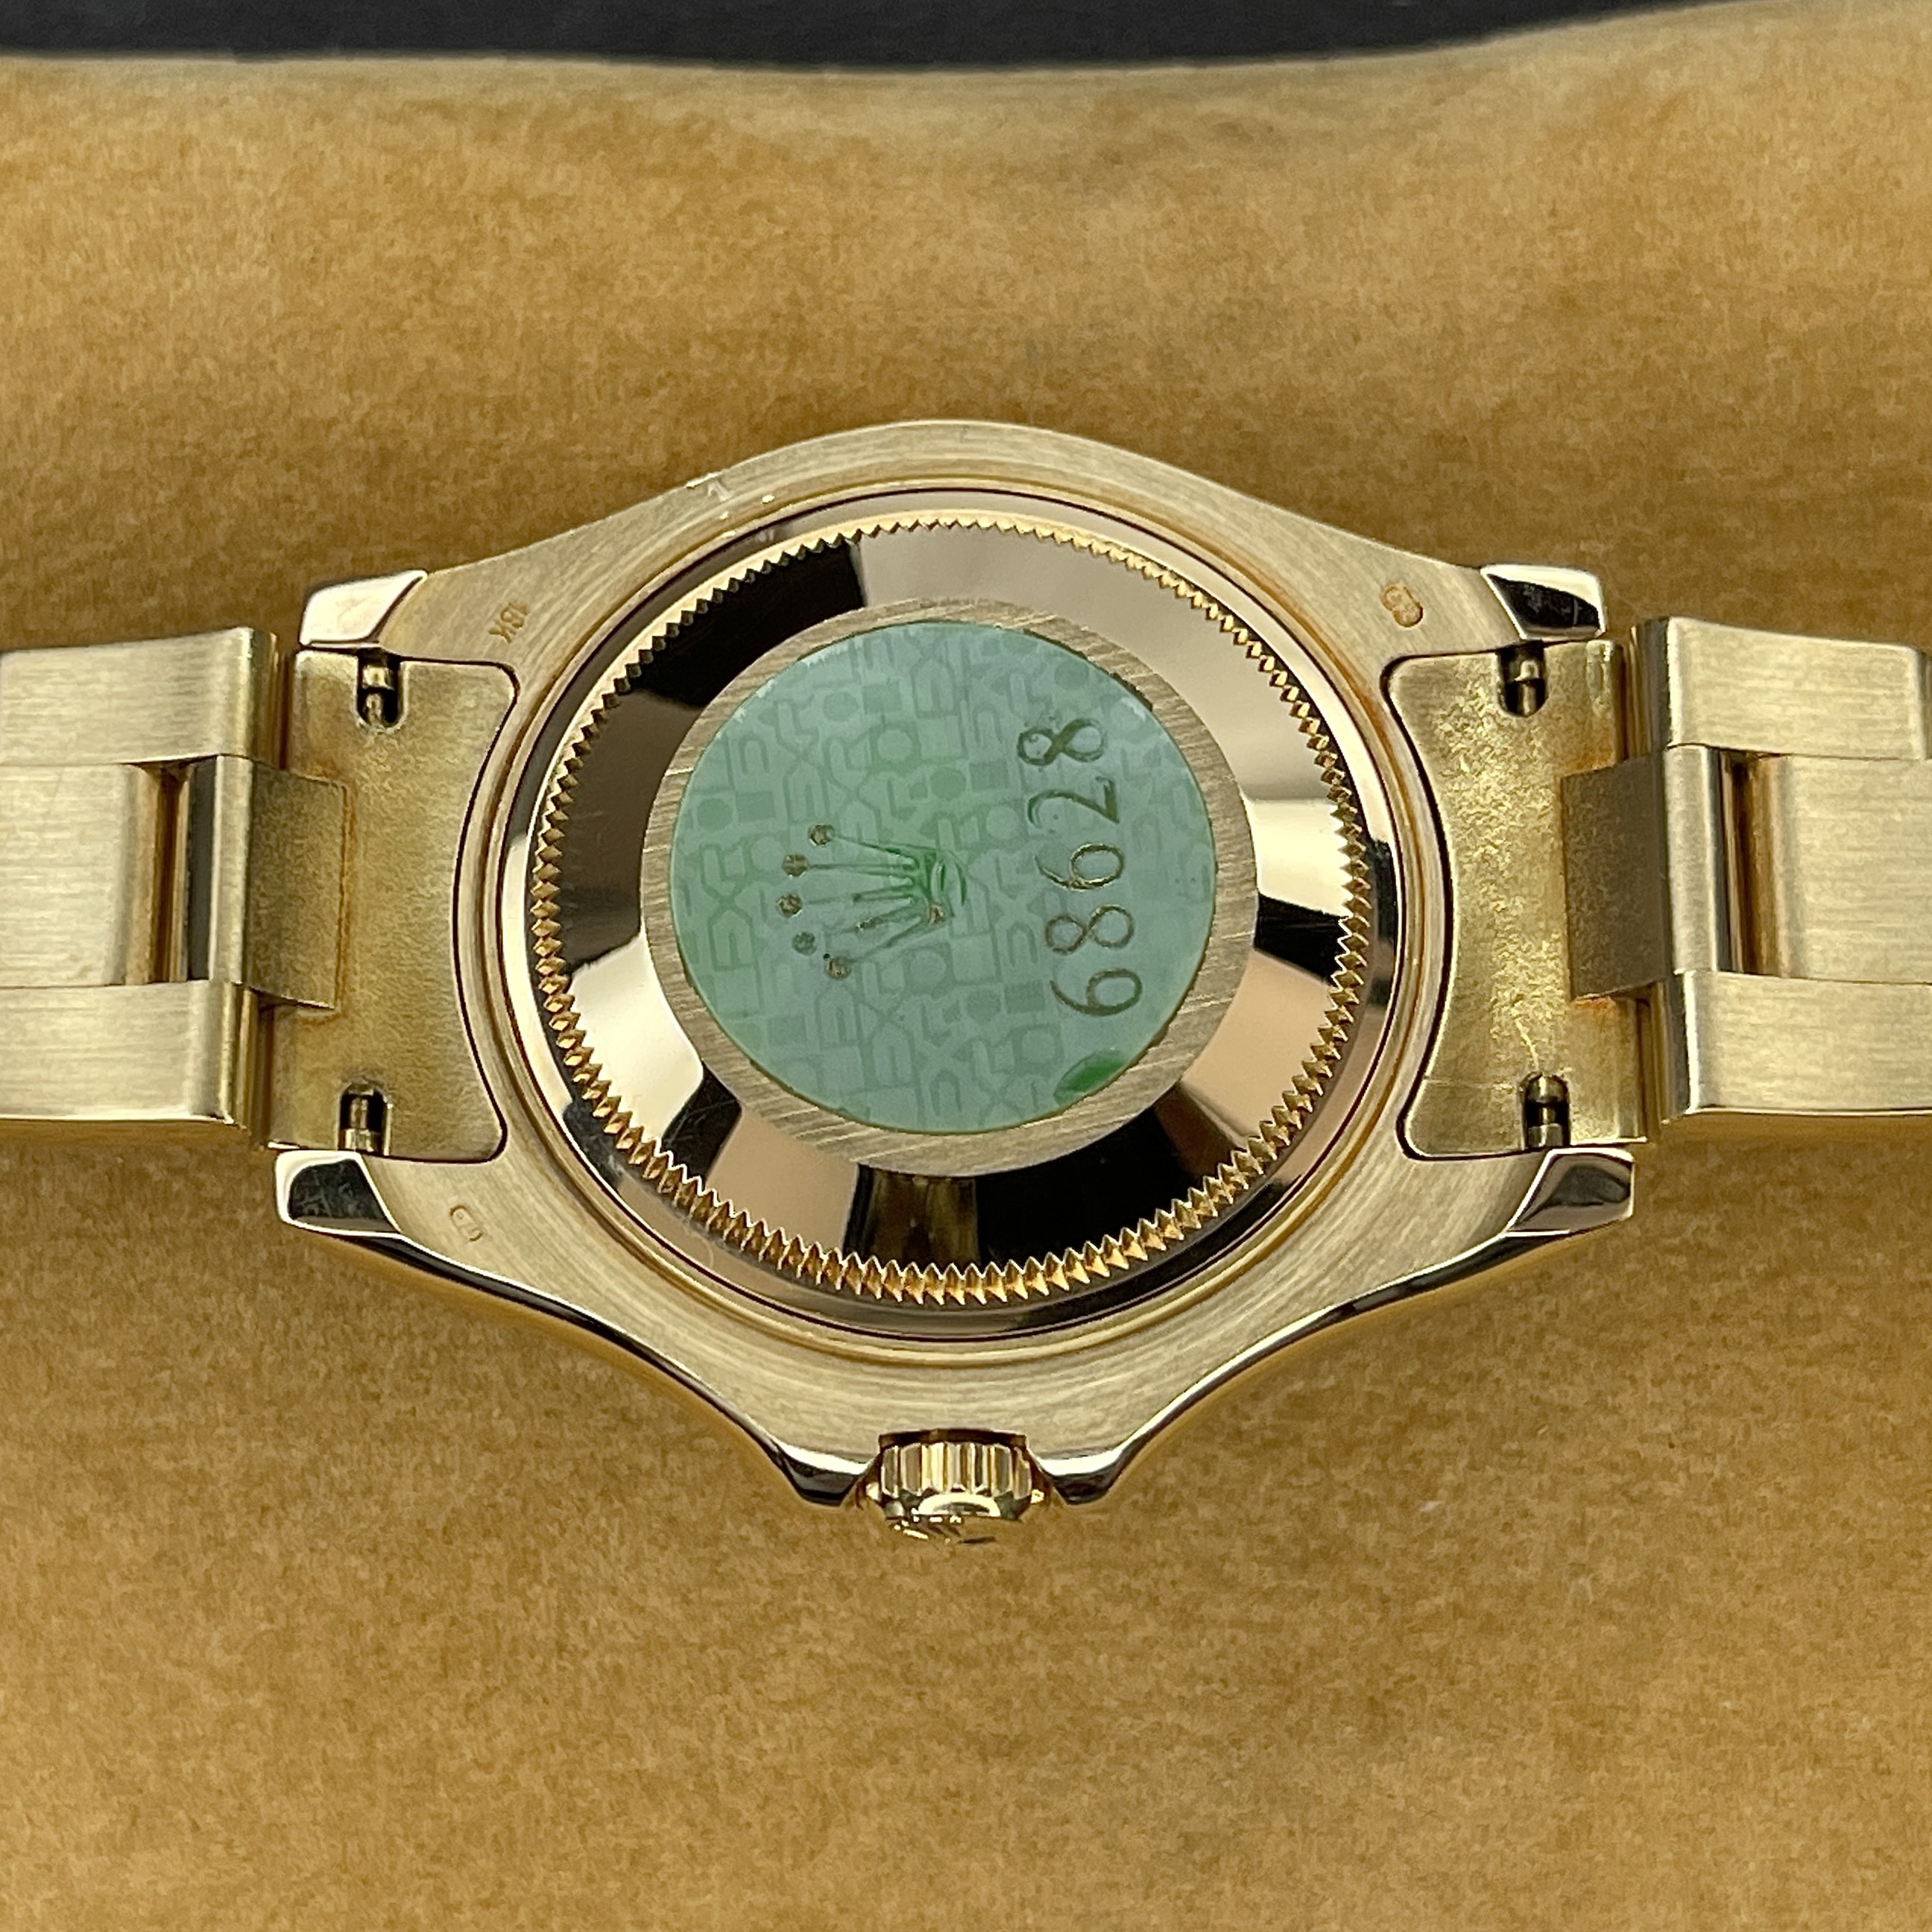 Rolex Yacht - Master Midsize Men's/Ladies 18k Gold Watch 68628